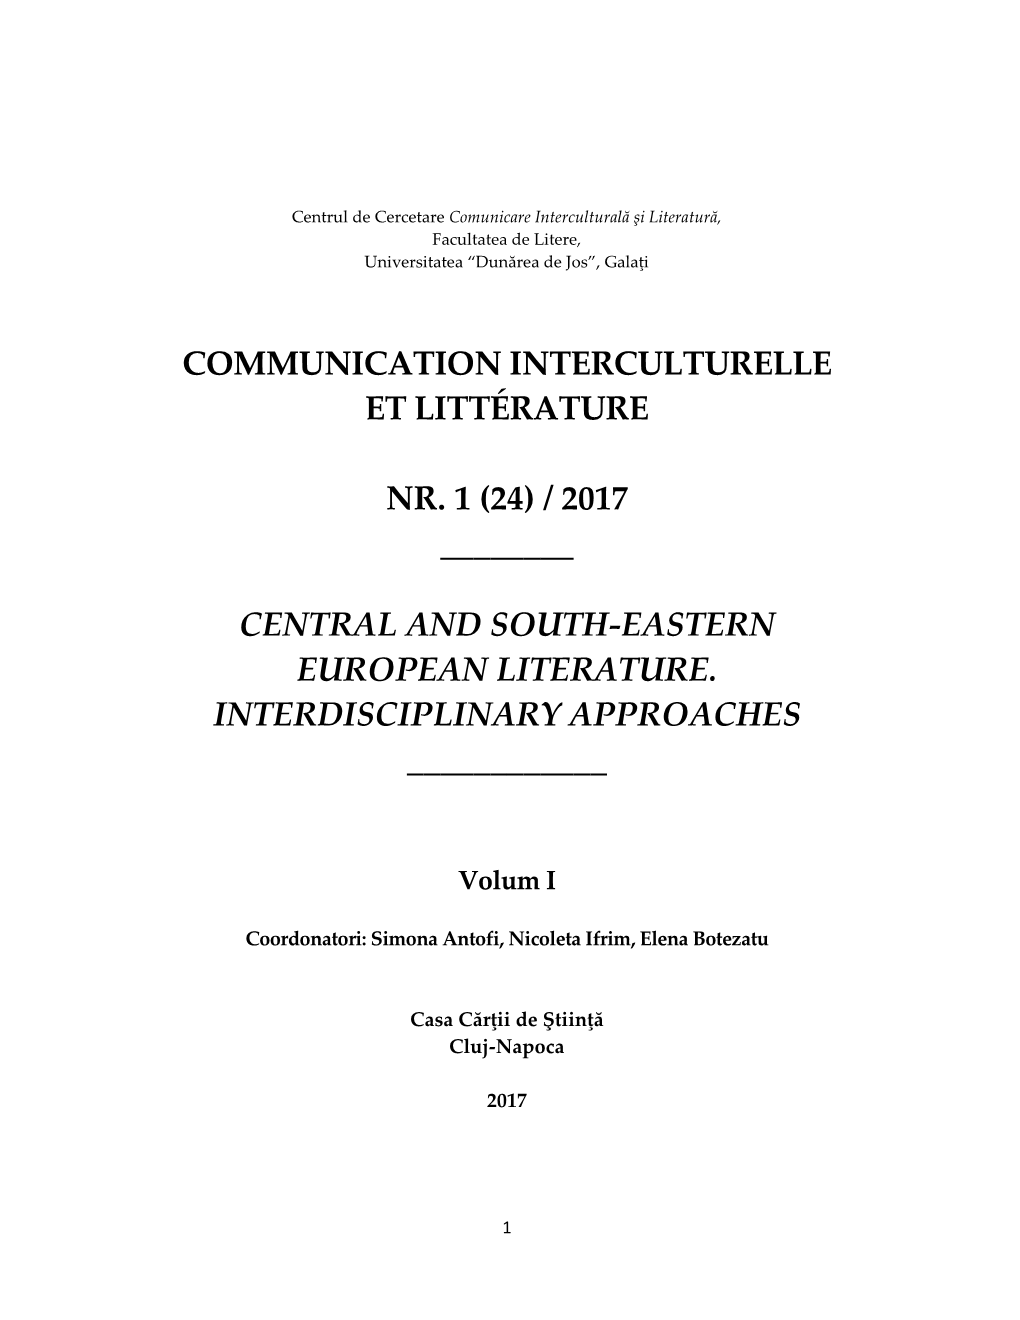 Communication Interculturelle Et Littérature